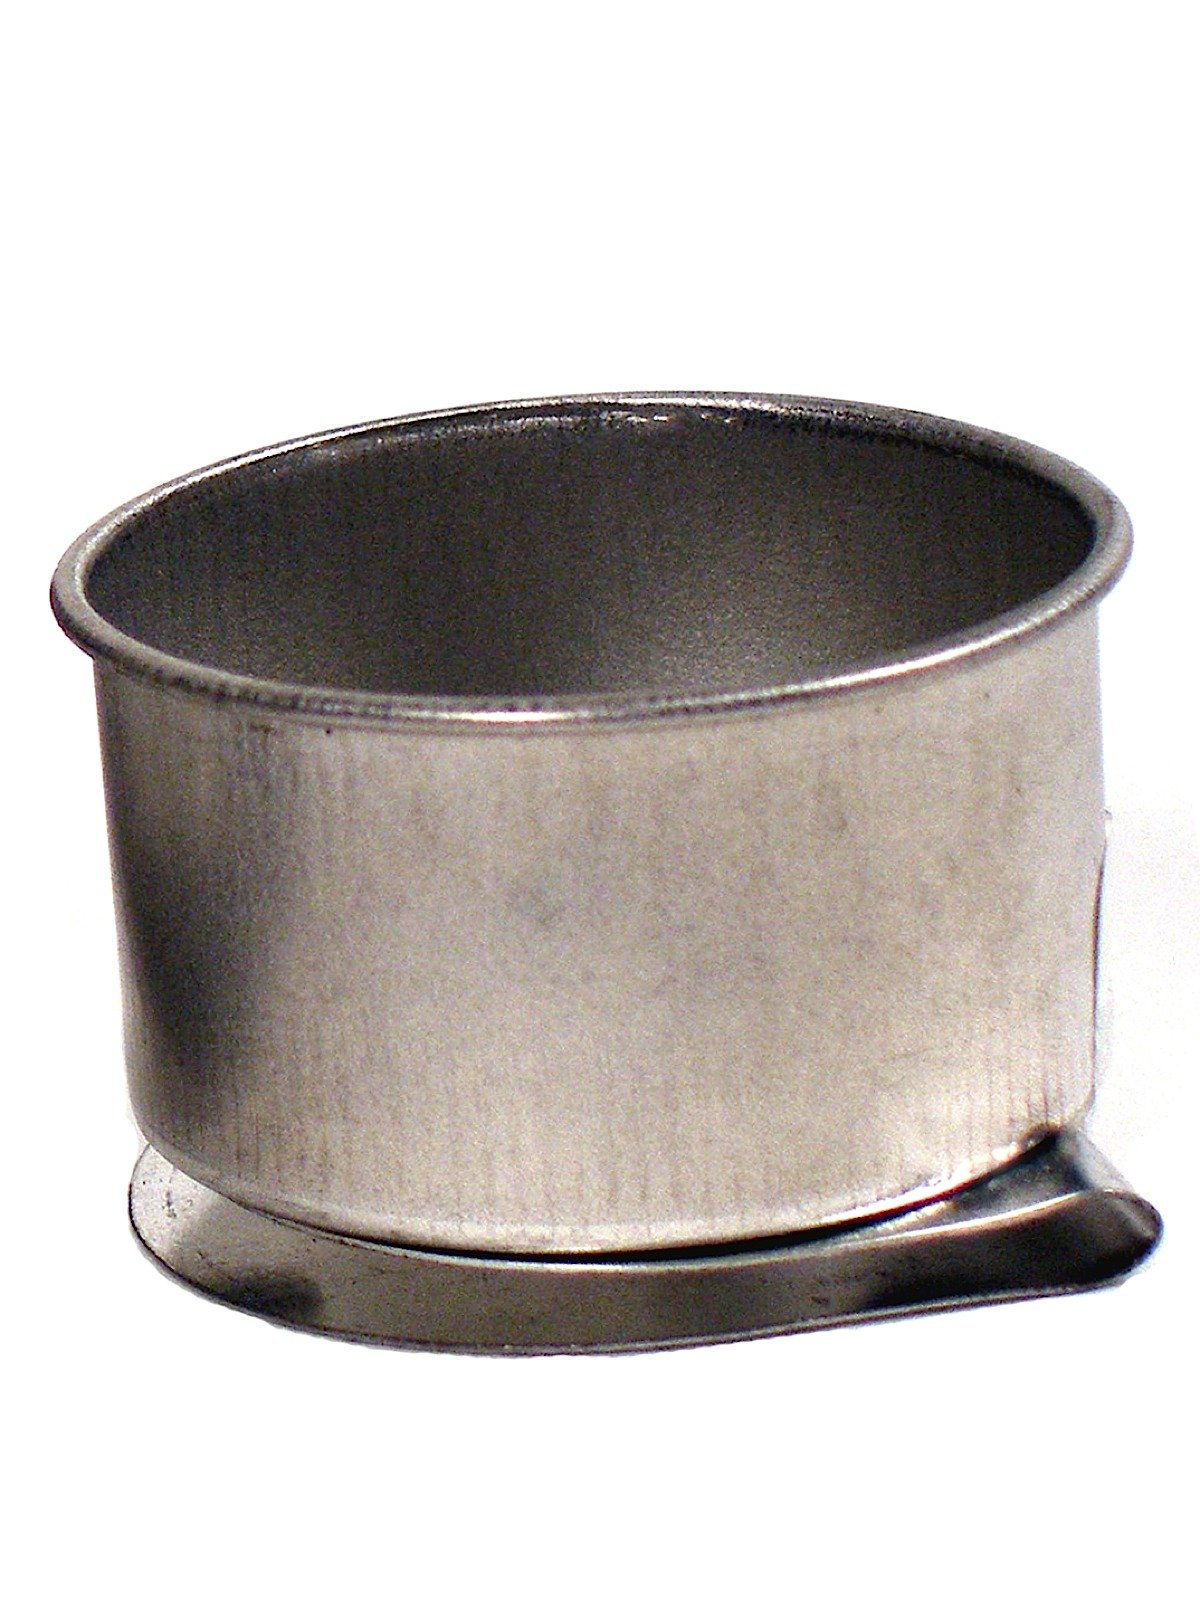 Stanrite - Aluminum Palette Cup